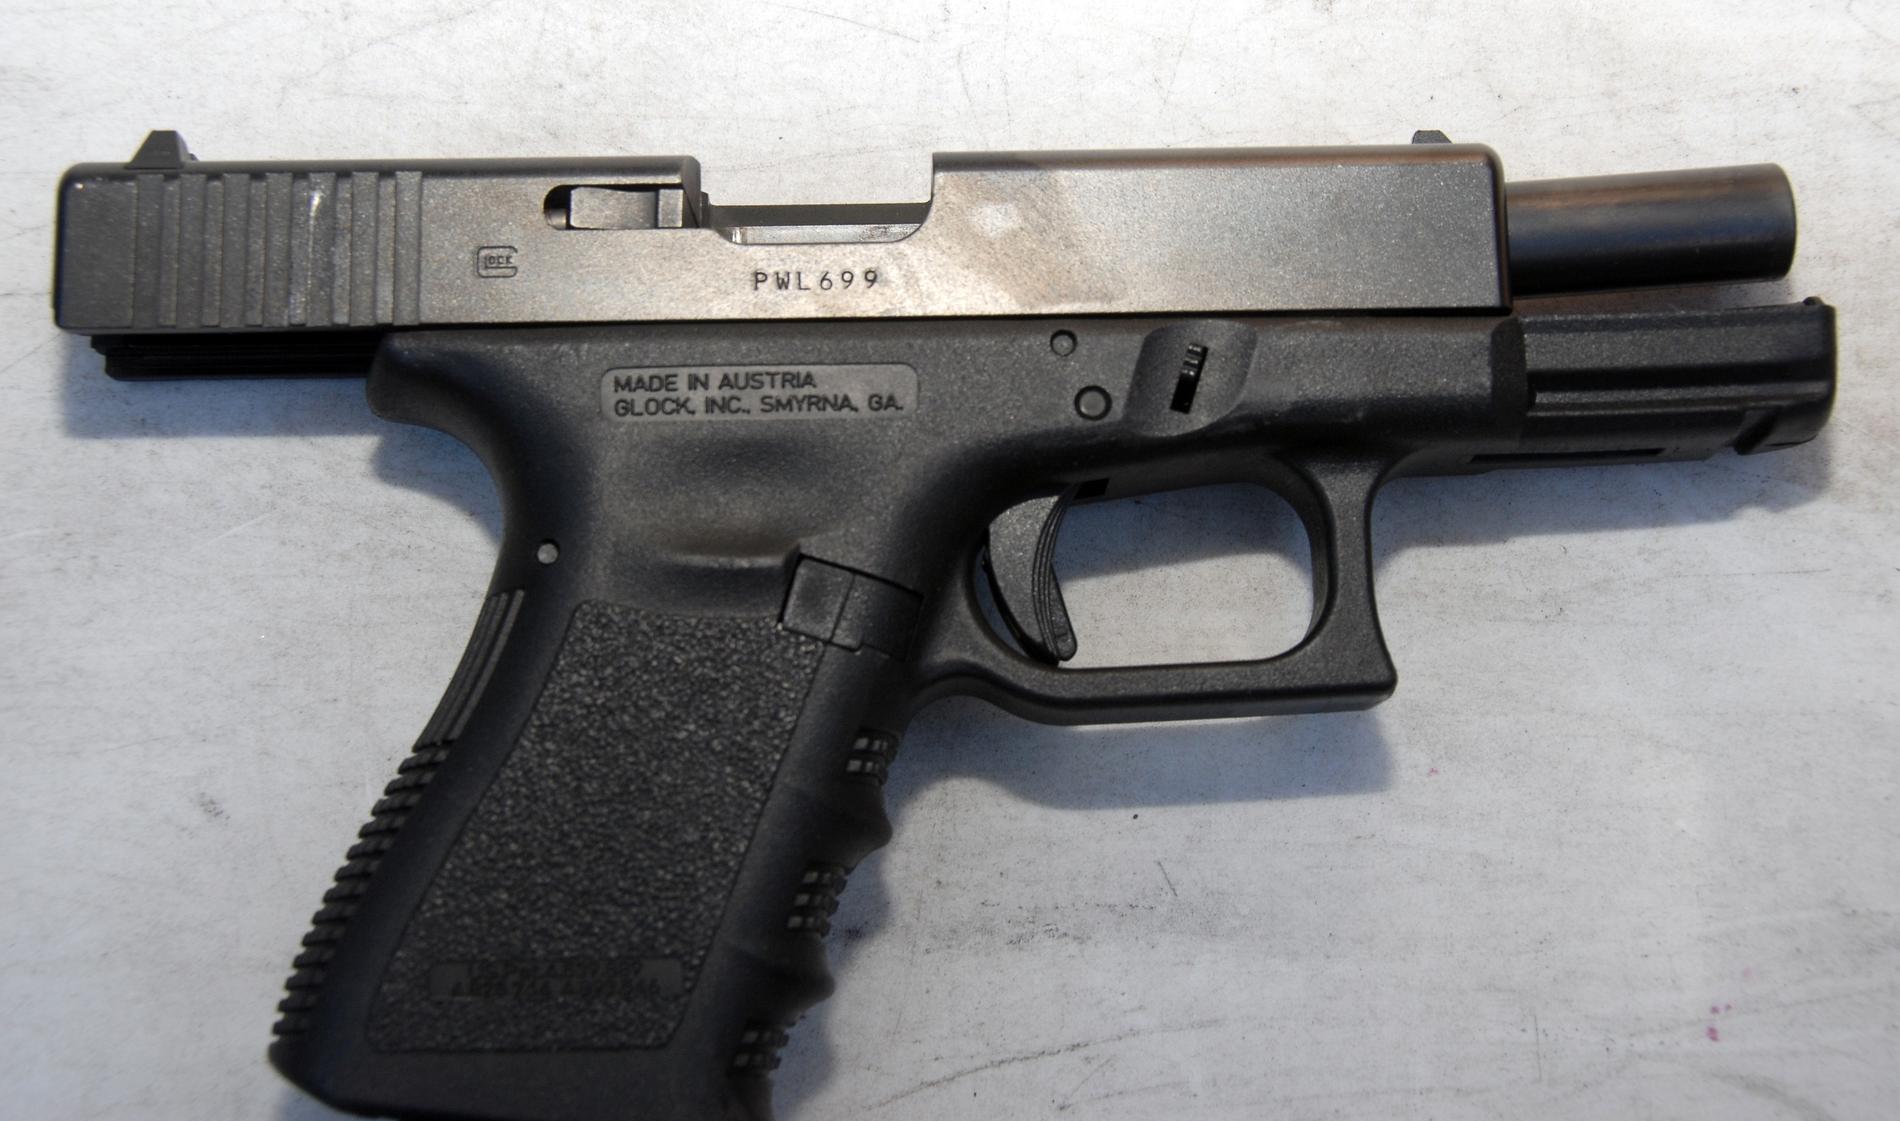 Sex stycken pistoler av modell Glock 17 ska enligt uppgift tidigare blivit stulna från ett låst skåp i Rosenbad. Nu ska ytterligare en pistol ha stulits.